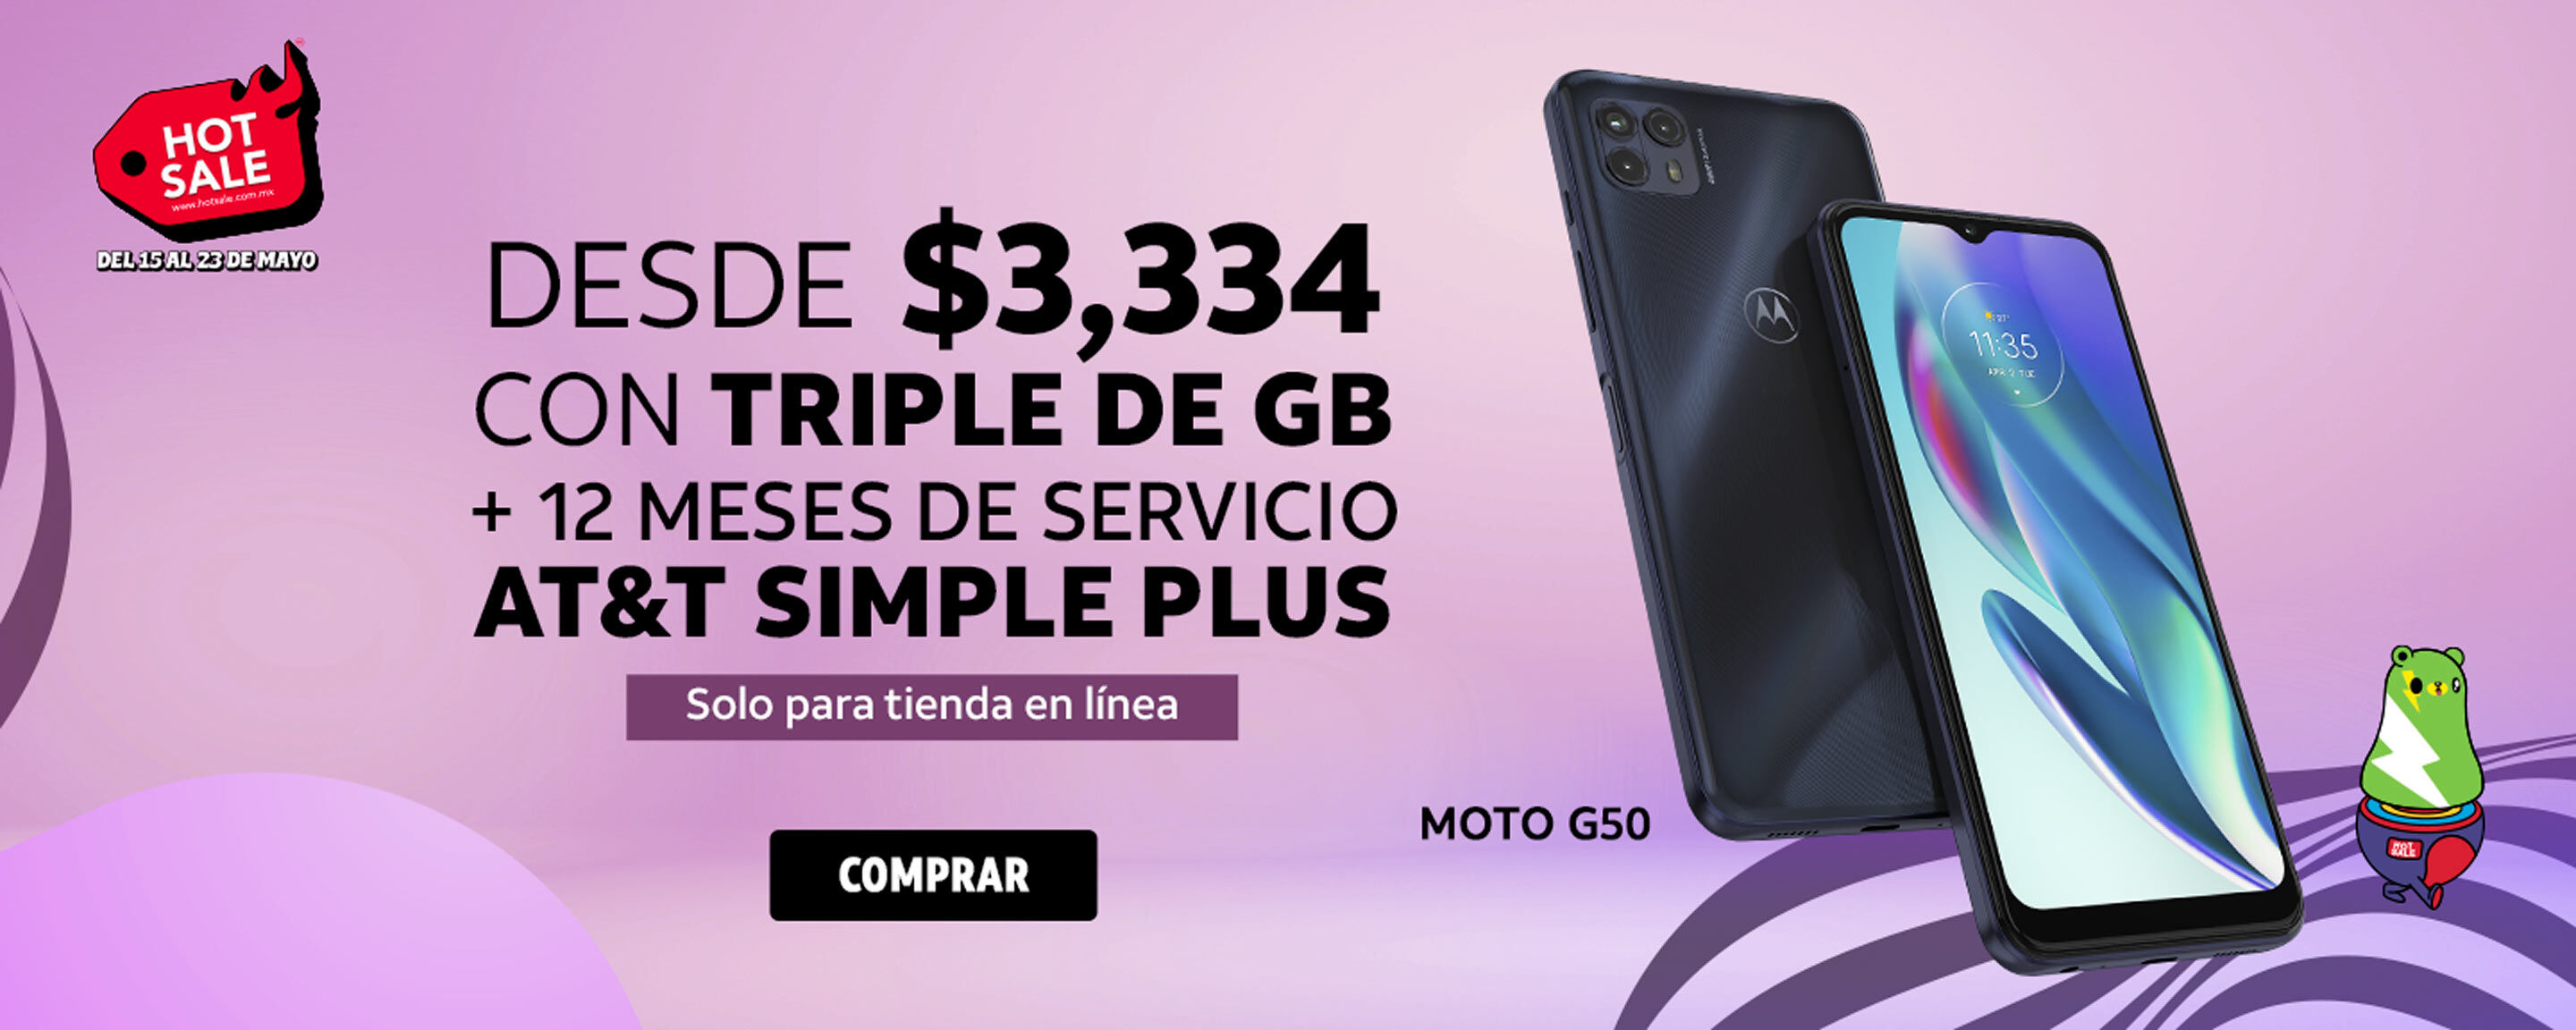 Moto G50 DESDE $3,334 CON TRIPLE DE GB + 12 MESES DE SERVICIO AT&T SIMPLE PLUS